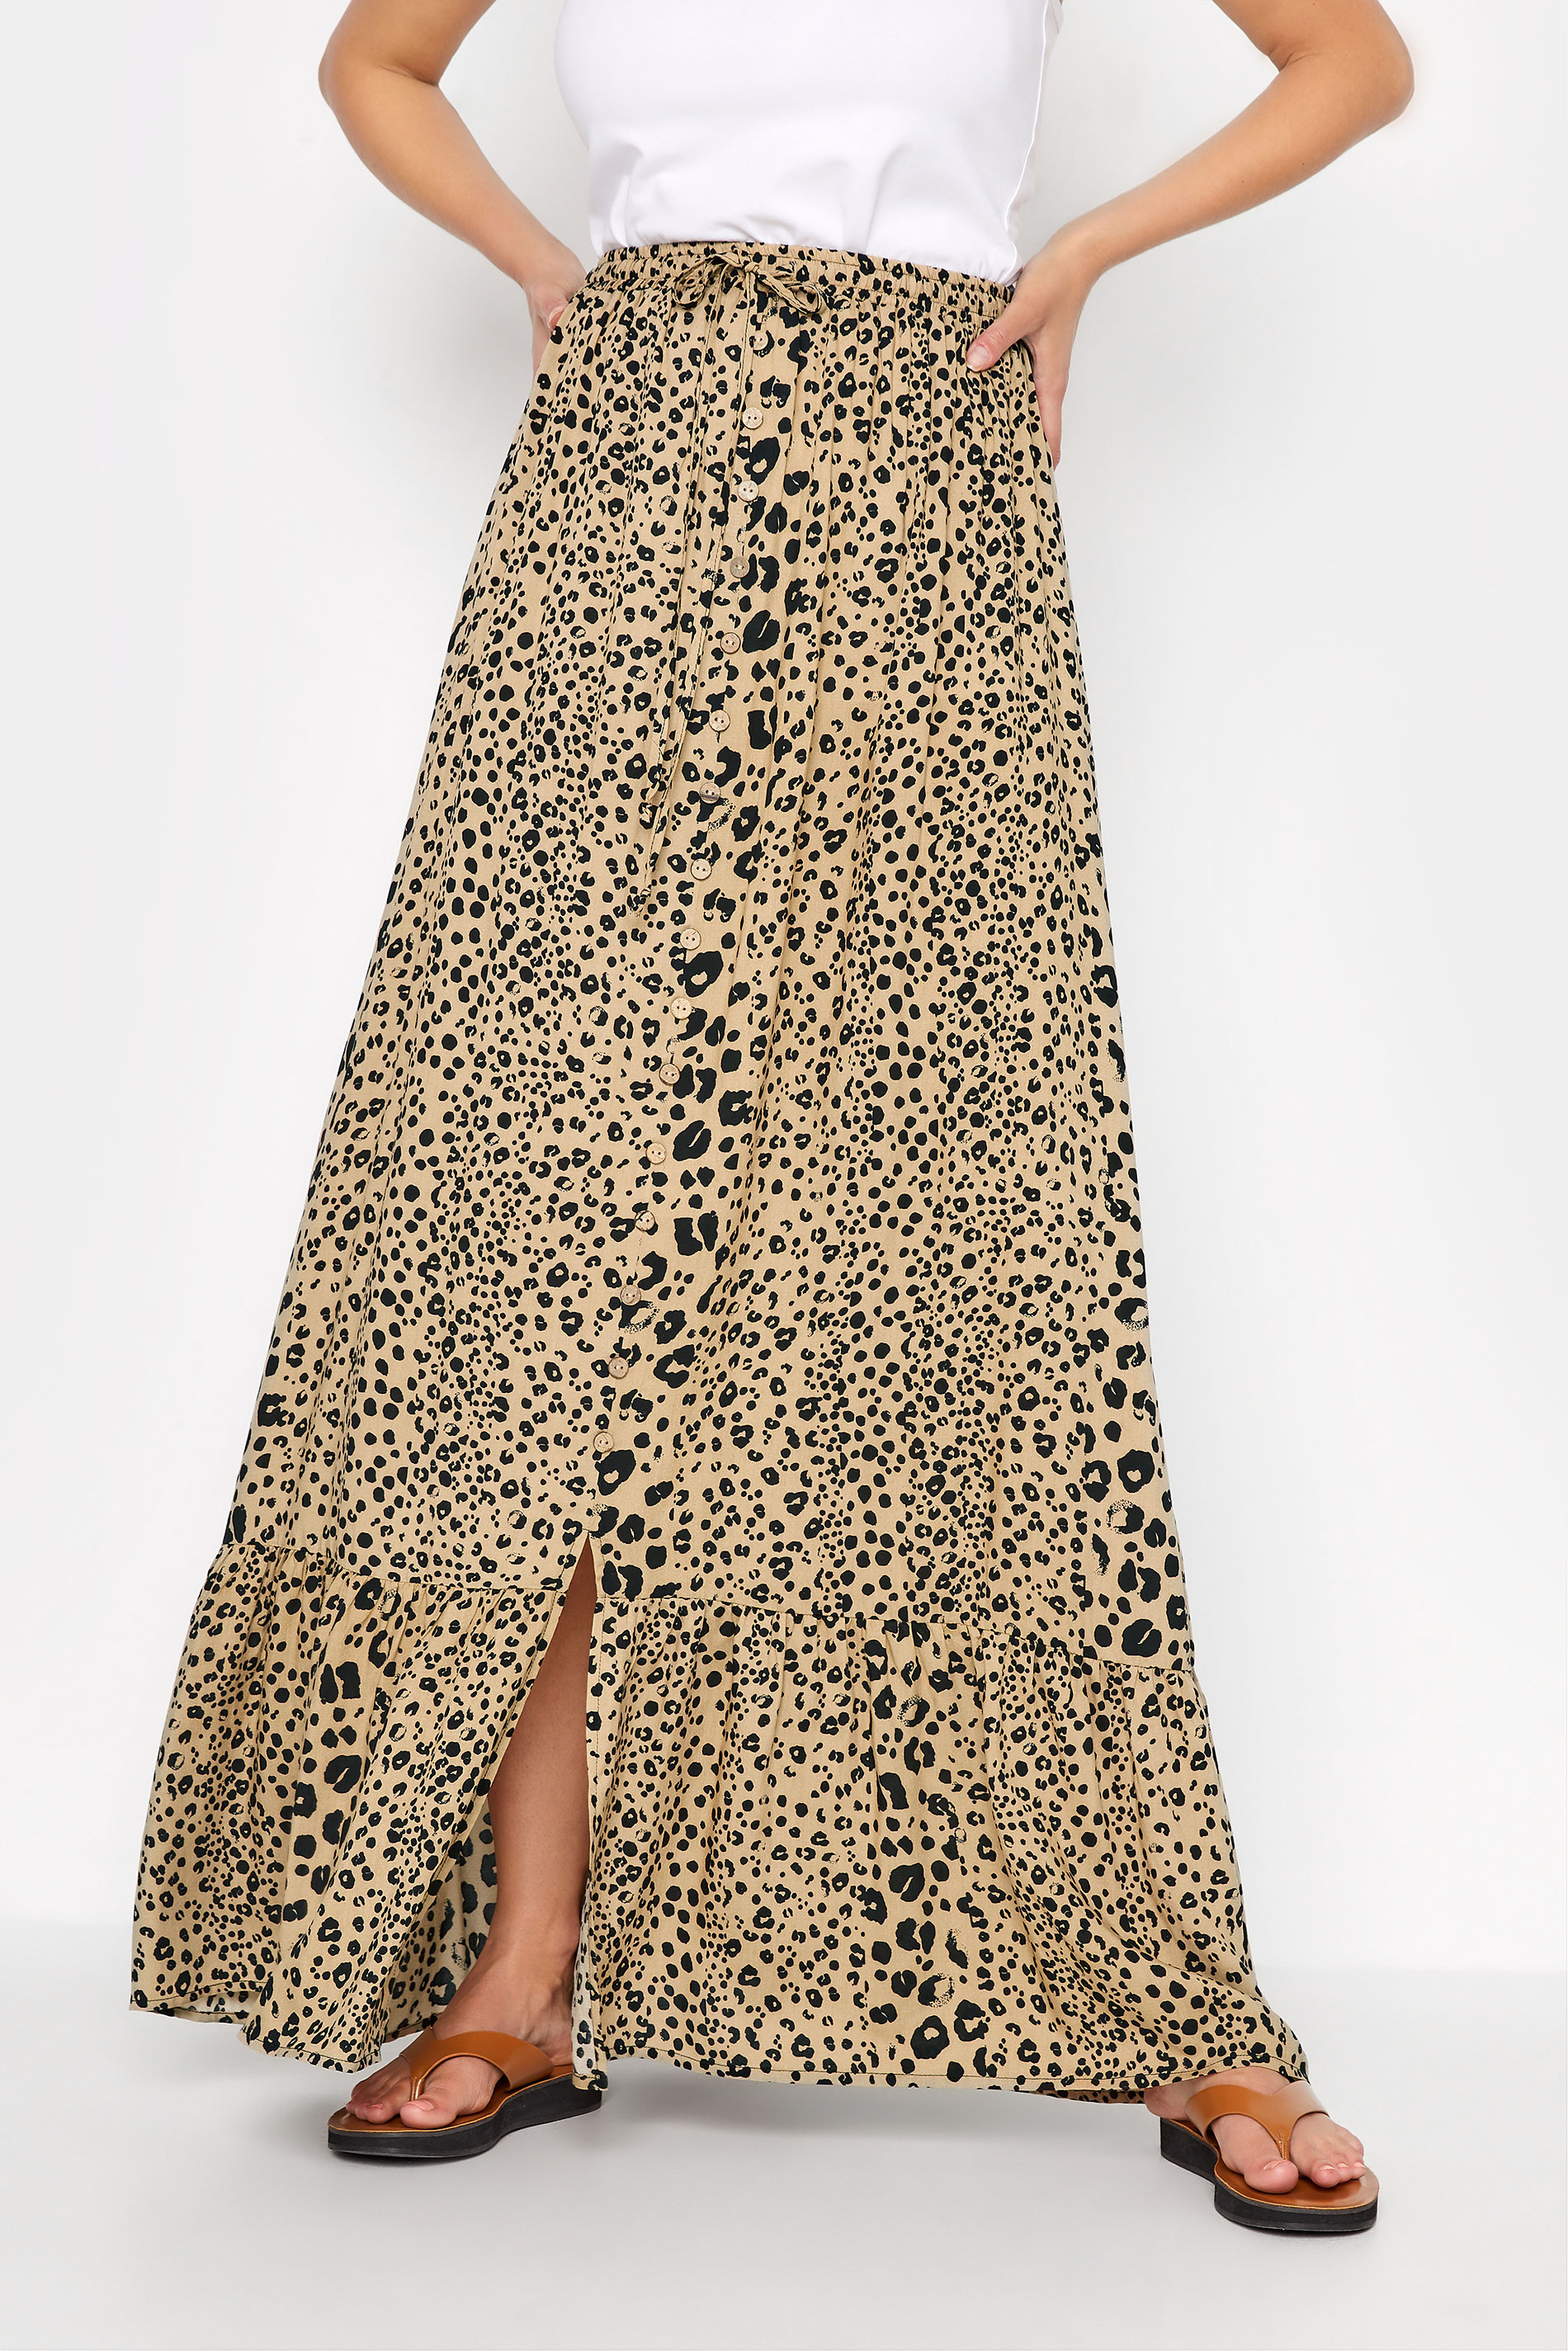 LTS Tall Natural Brown Leopard Print Maxi Skirt_B.jpg